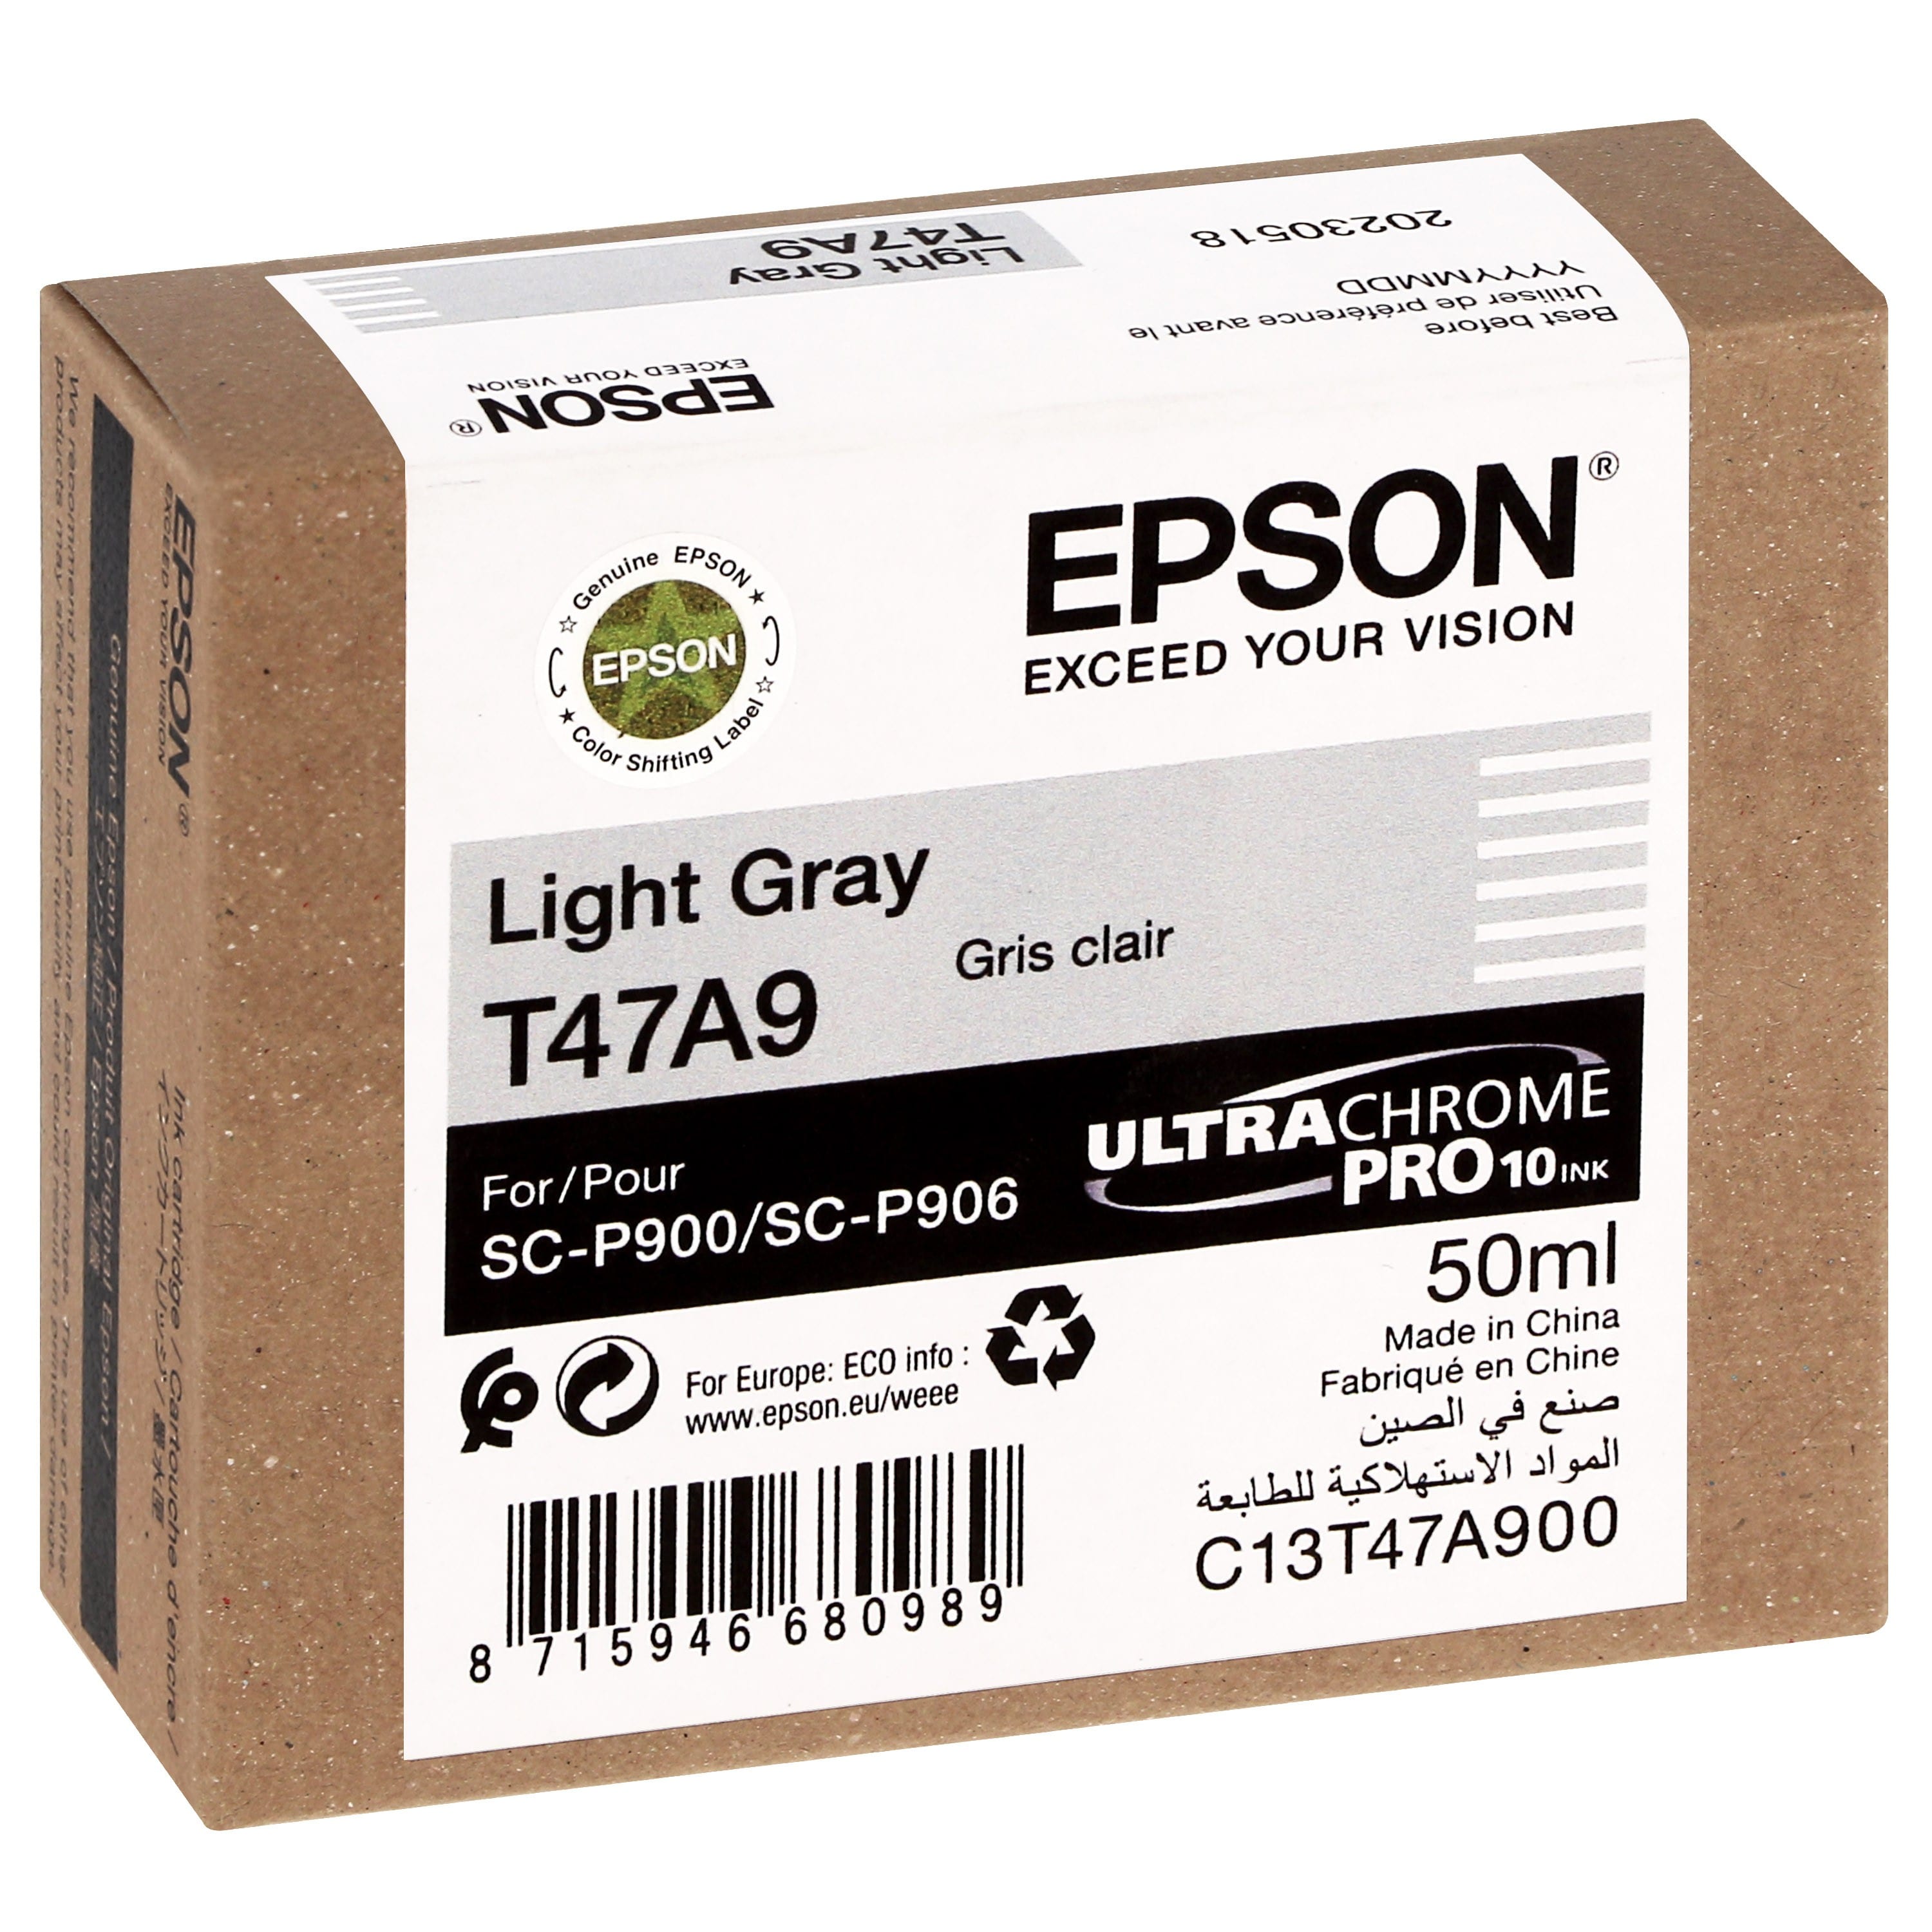 EPSON - Cartouche d'encre traceur UltraChrome Pro 10 SC-P900 - Light gris - 50ml - T47A9